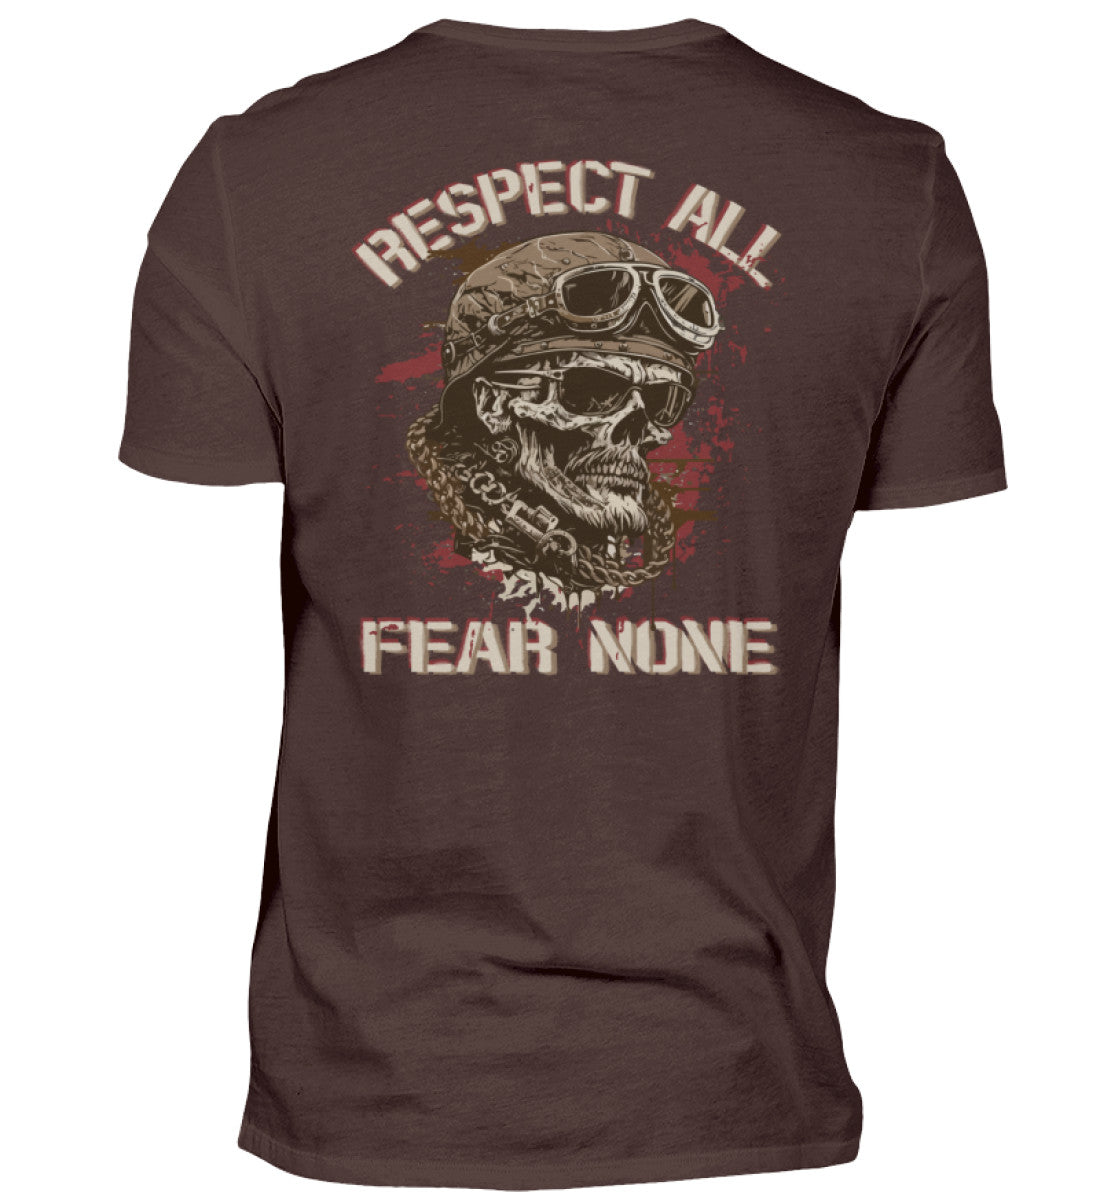 Ein Biker T-Shirt für Motorradfahrer von Wingbikers mit dem Aufdruck, Respect All - Fear None, als Back Print, in braun.